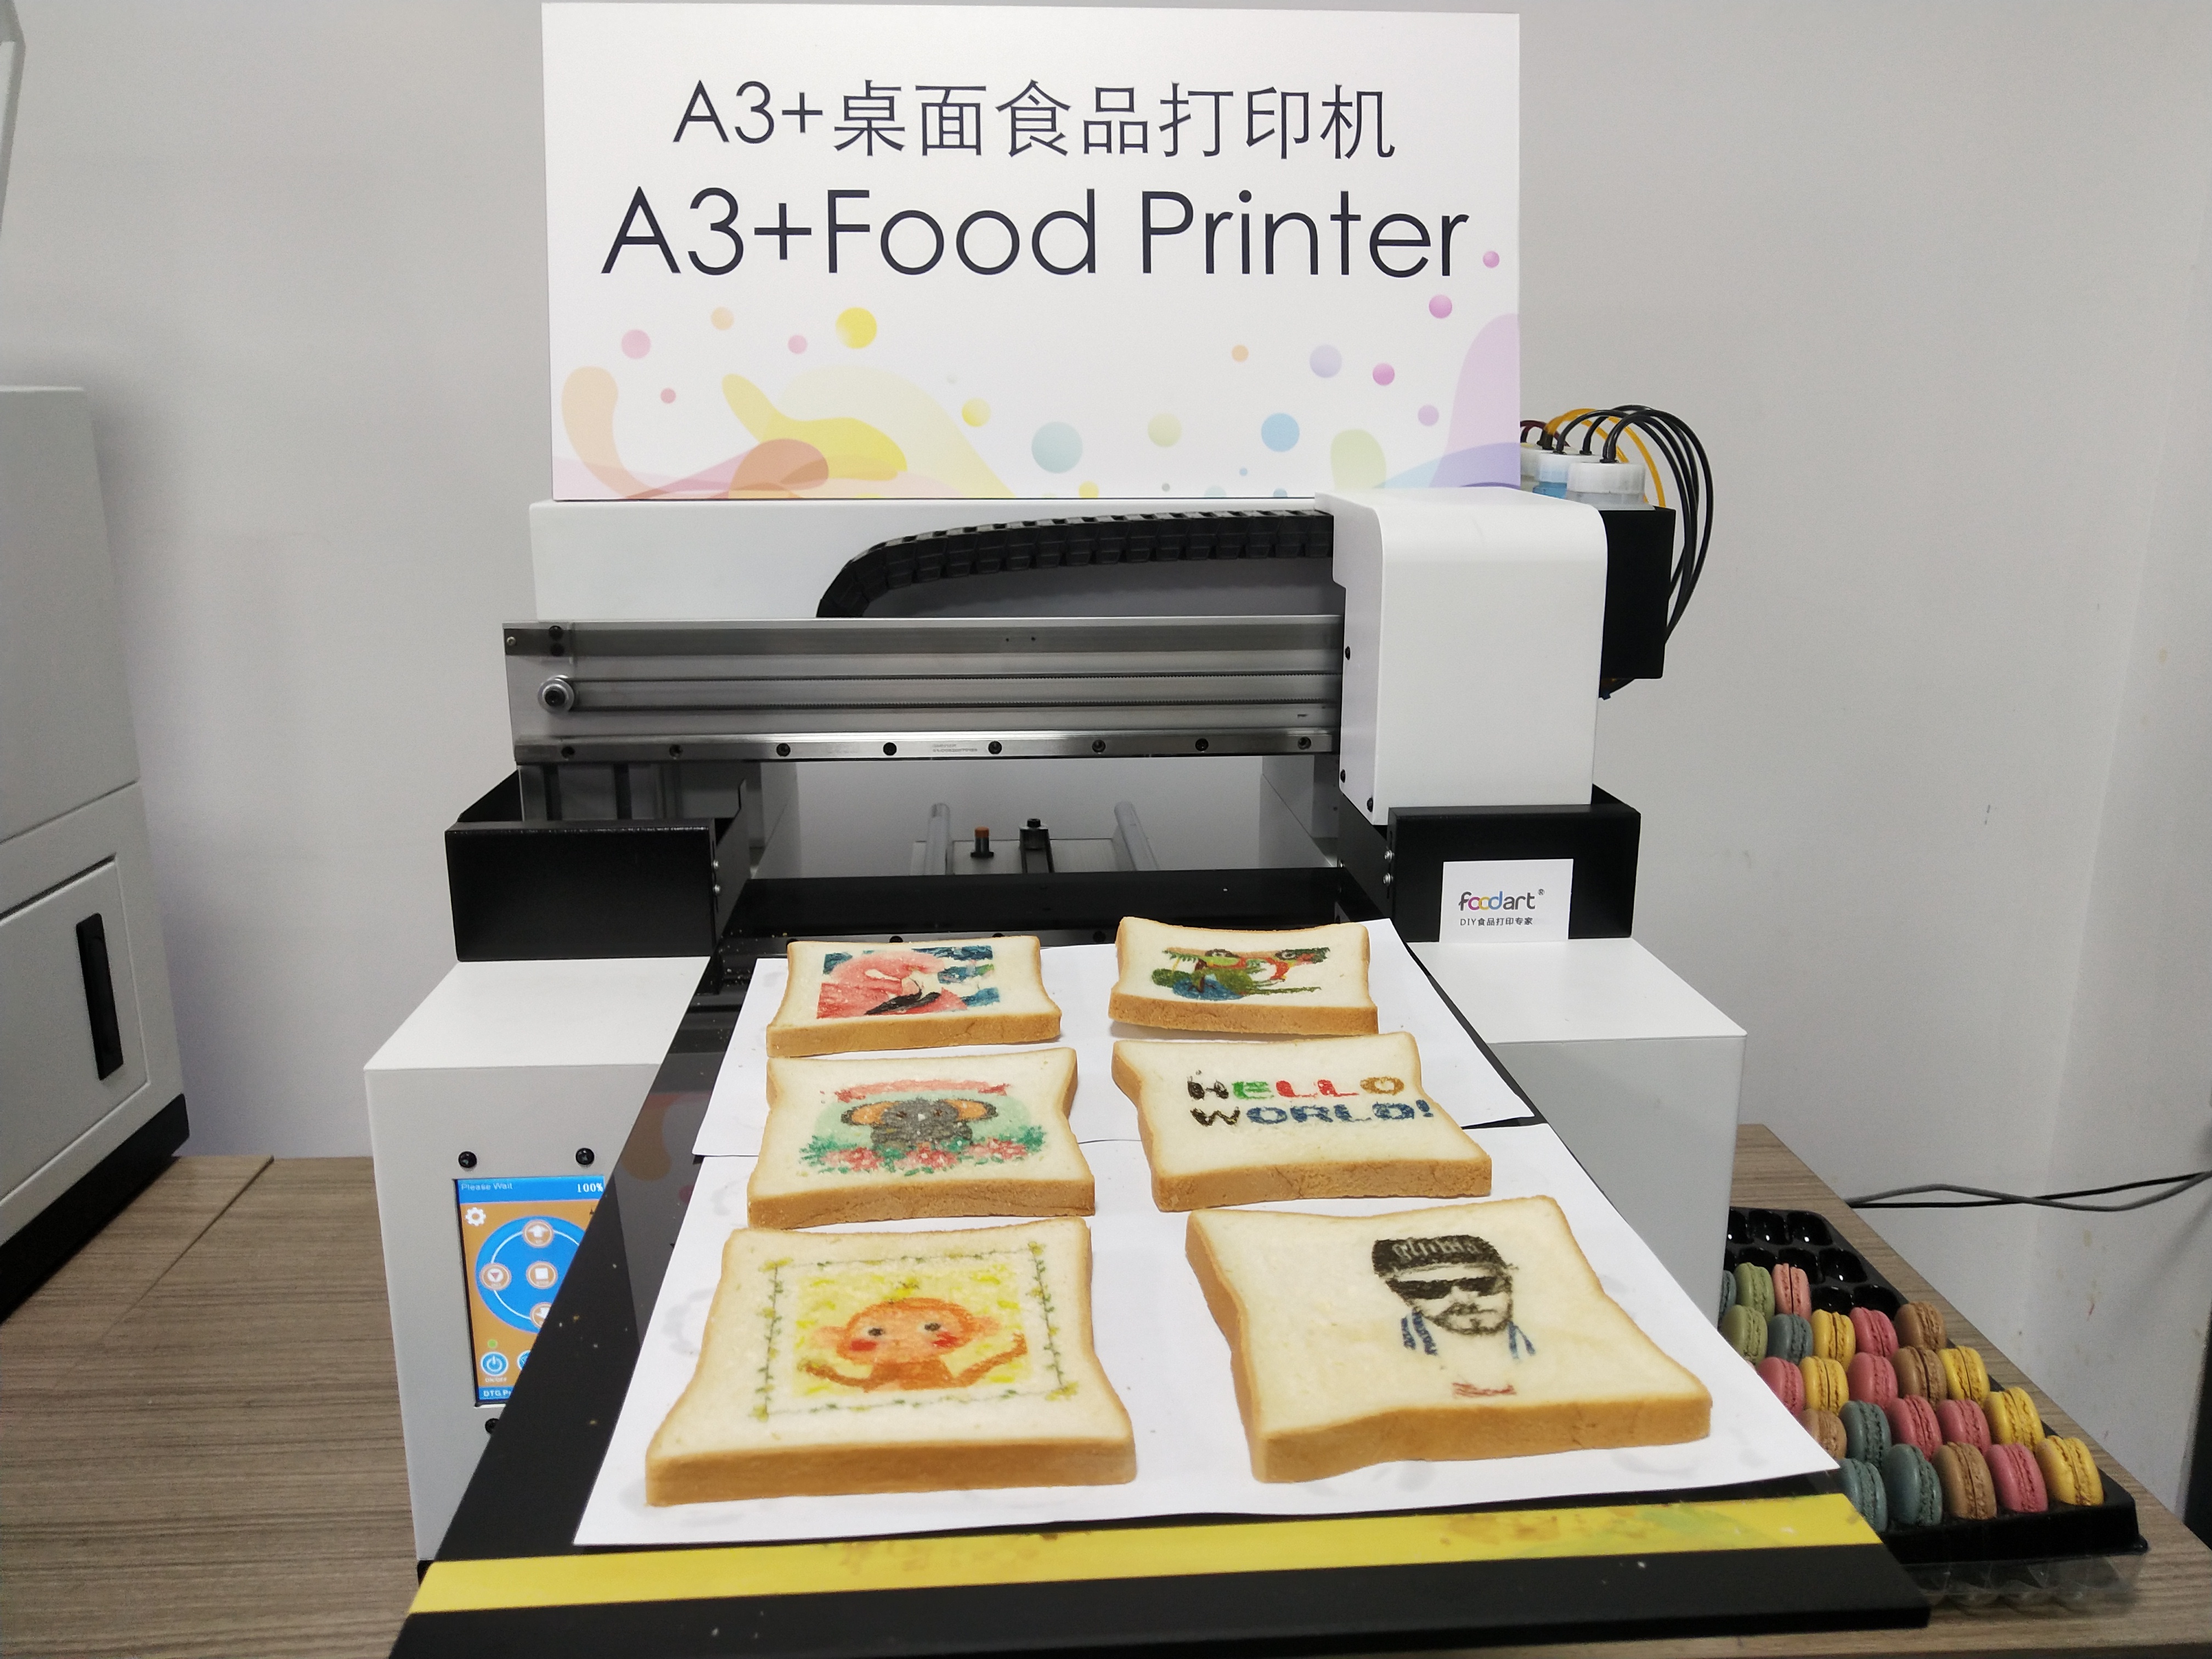 A3+ 桌面食品打印机